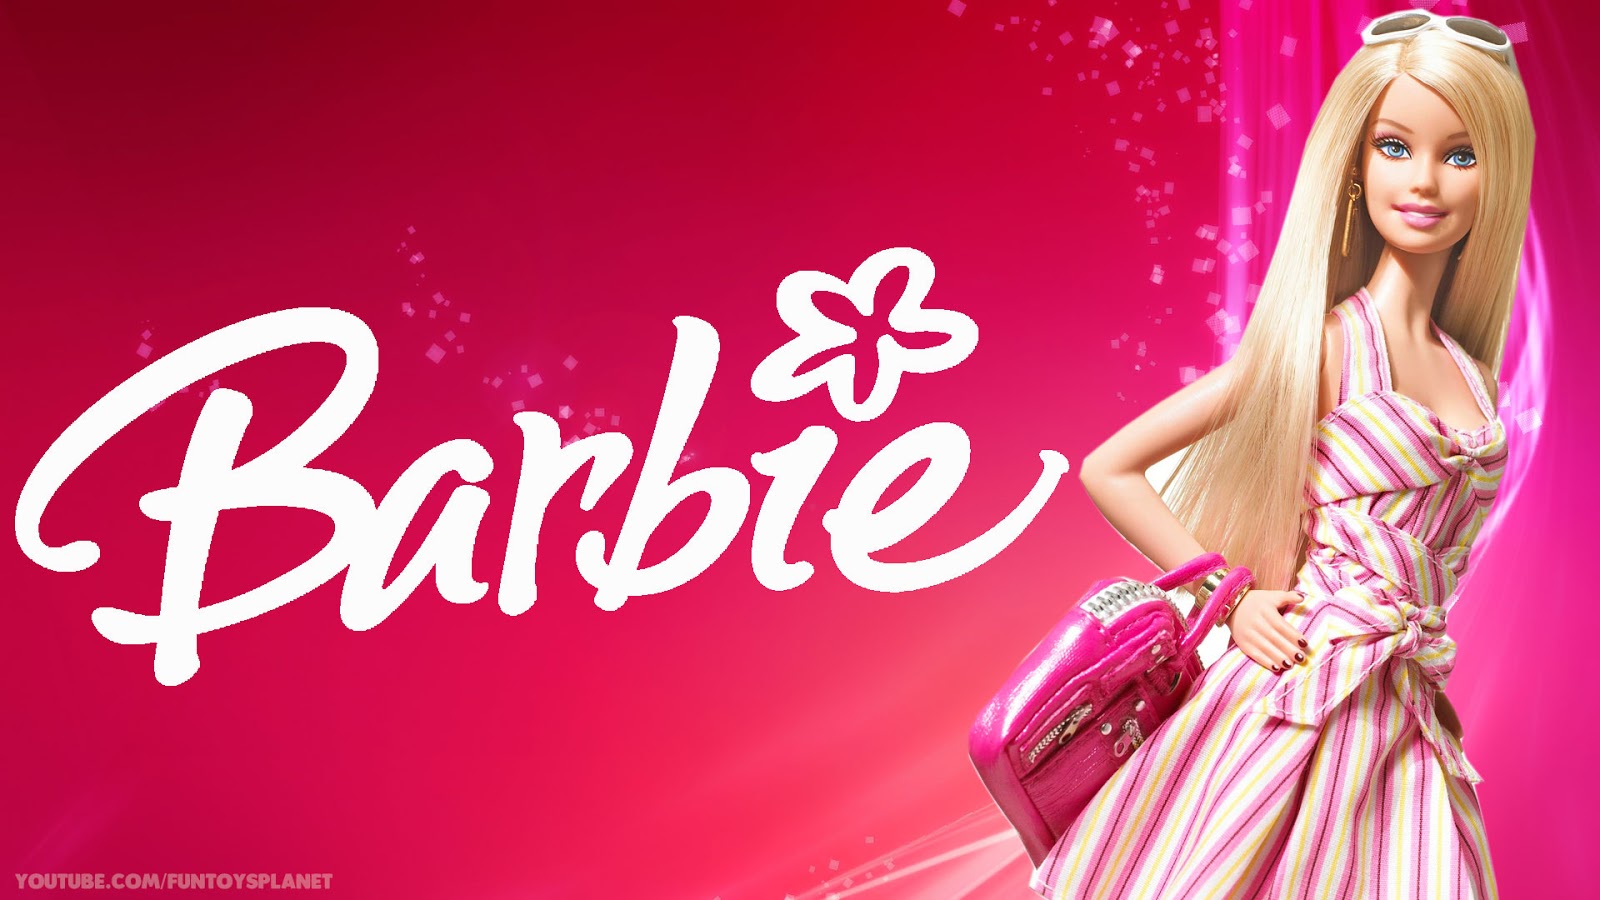 Barbie Wallpaper HD For Desktop Wallpapermonkey